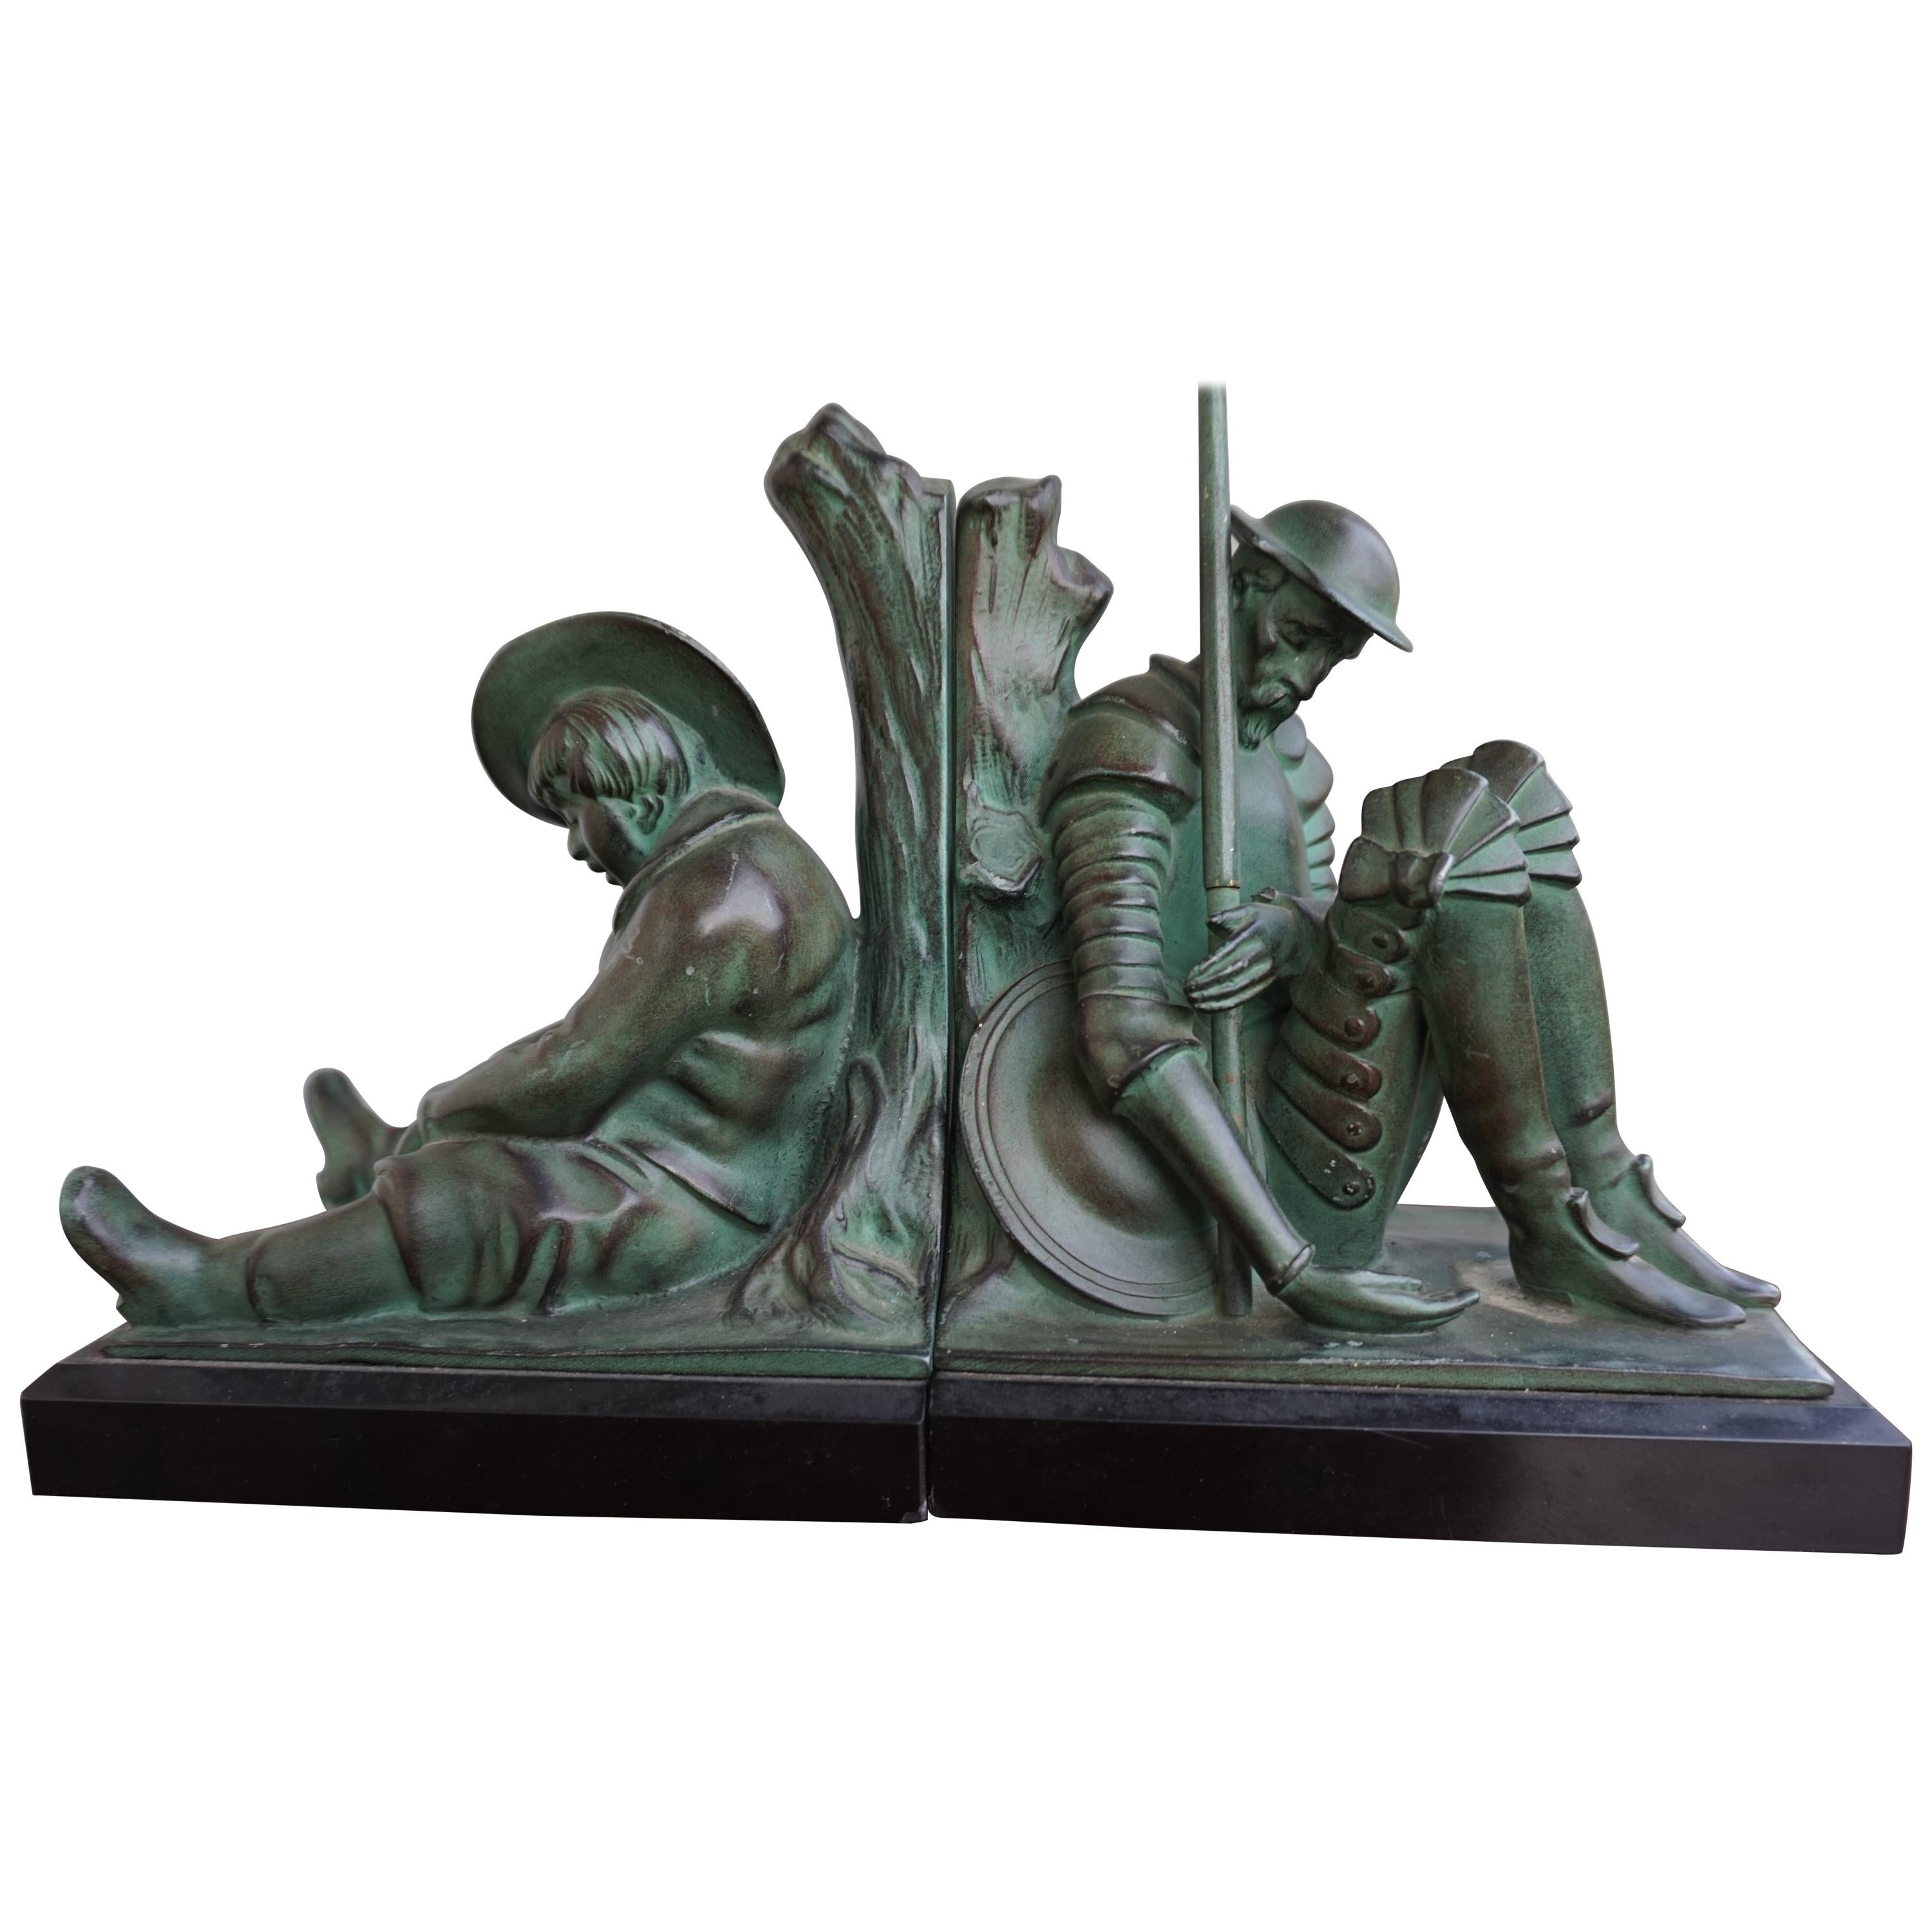 Bronze & Marble Art Deco Don Quixote & Sancho Panza Sculpture Bookends by Janle